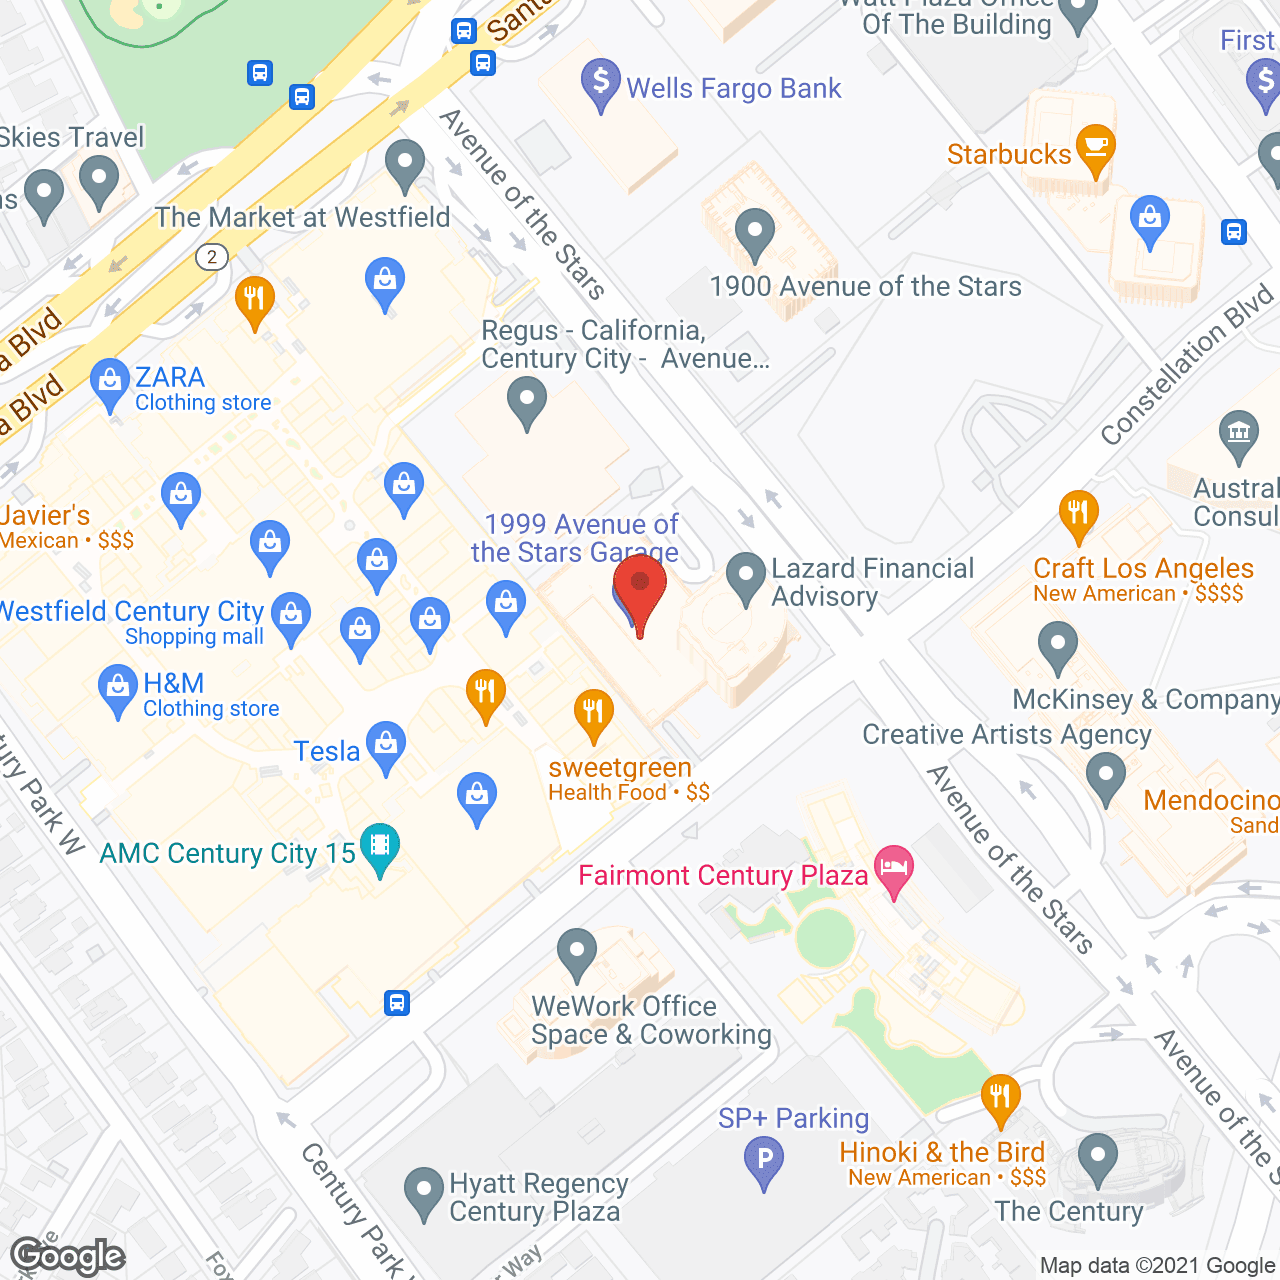 Cerna HomeCare - LA in google map